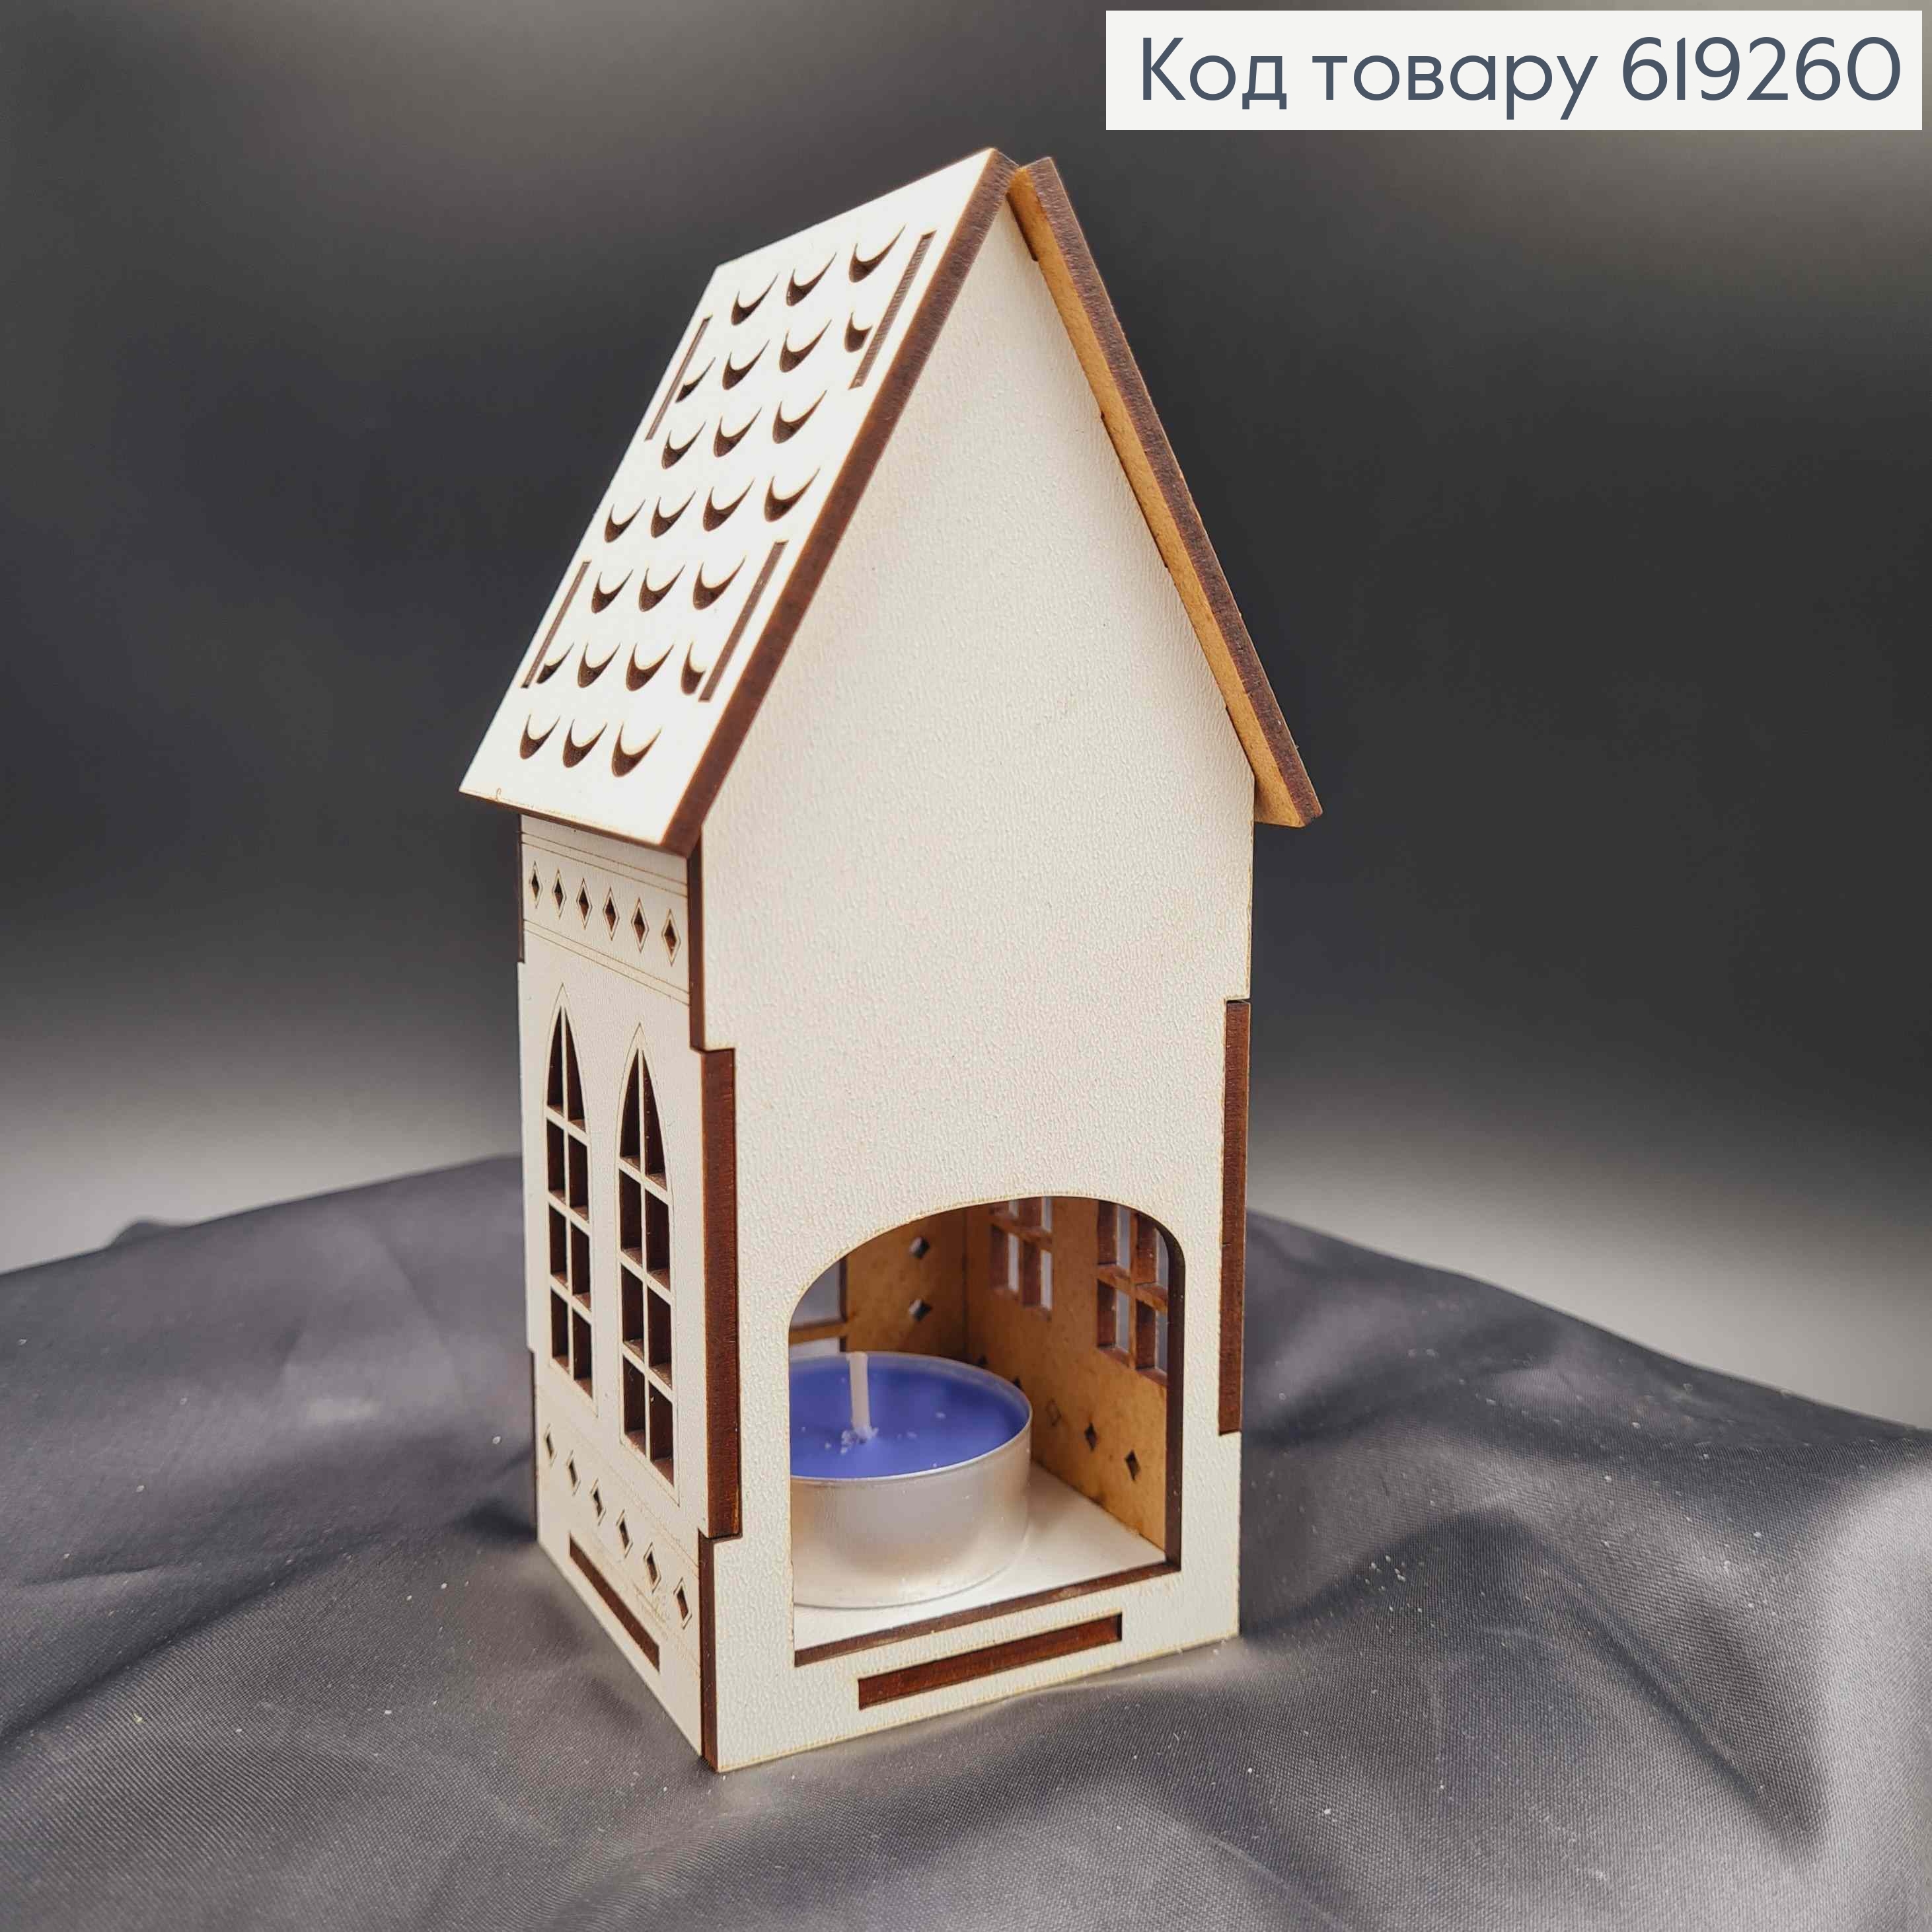 Підсвічник, дерев'яний білий будиночок "Біг бен", з візерунком, 15*7*5см, Україна 619260 фото 2